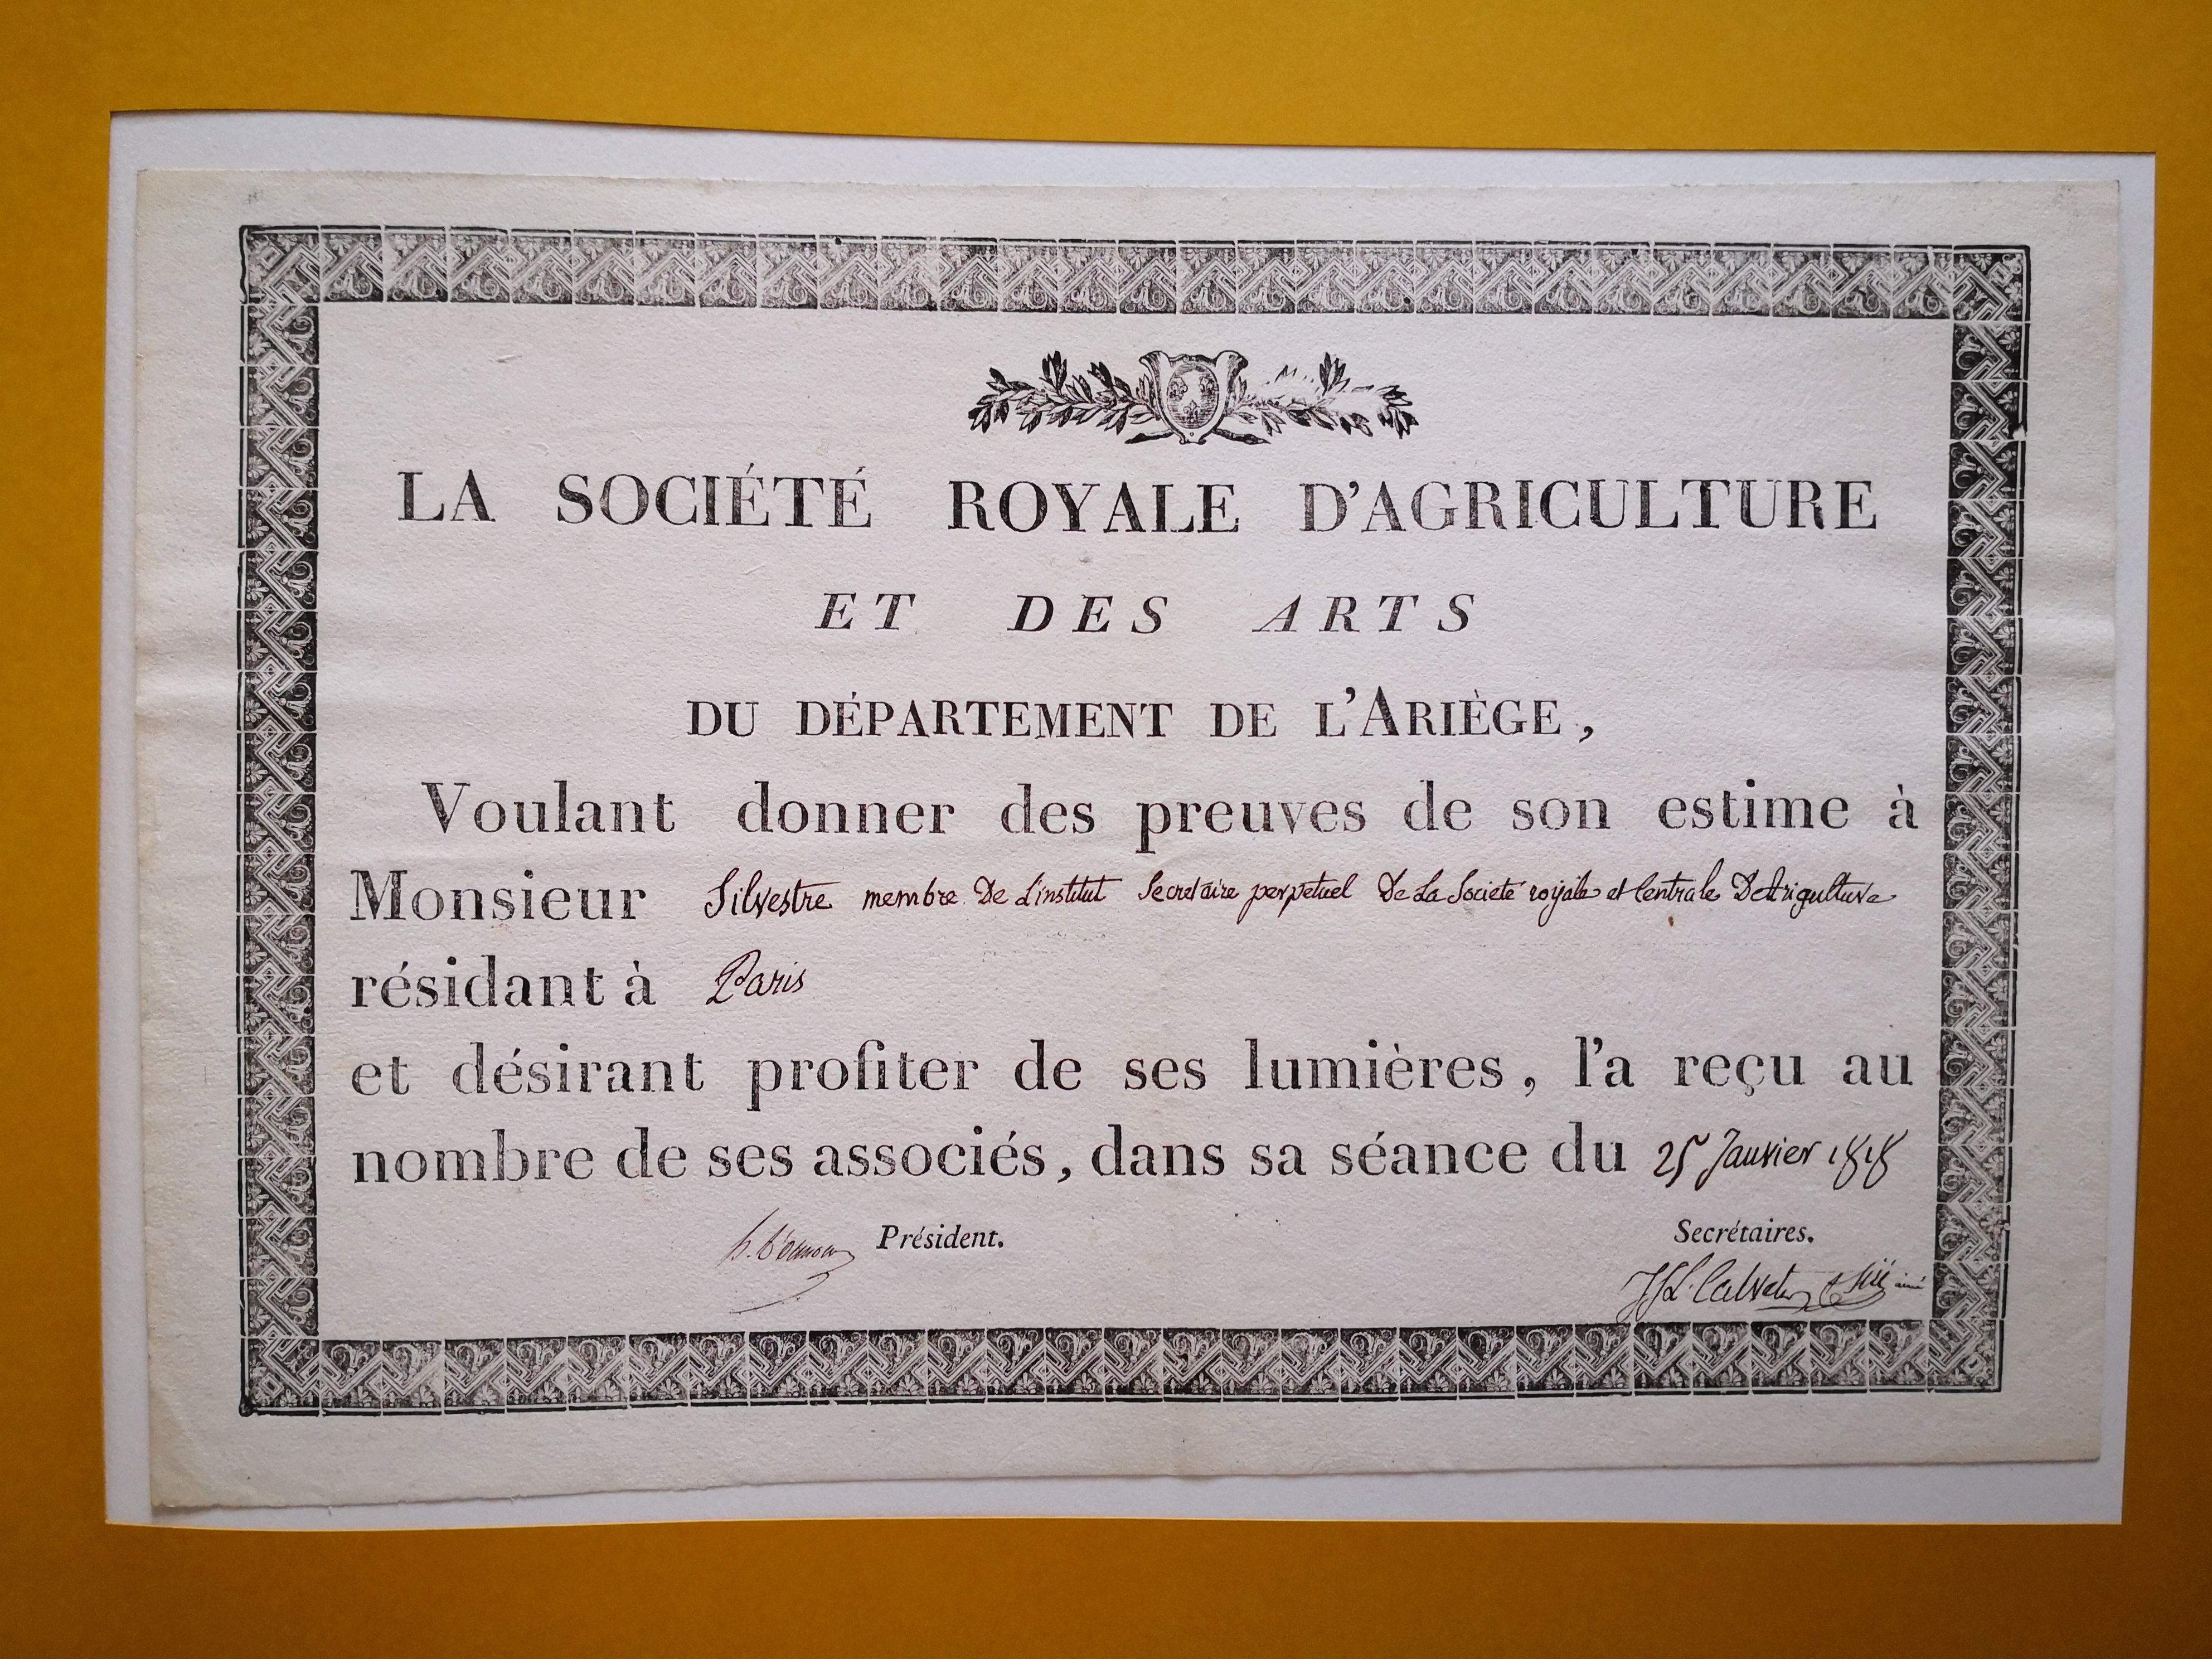  Diplôme d'associé de Sociéte Royale d'Agriculture et des Arts du département de l'Ariège - Document 1